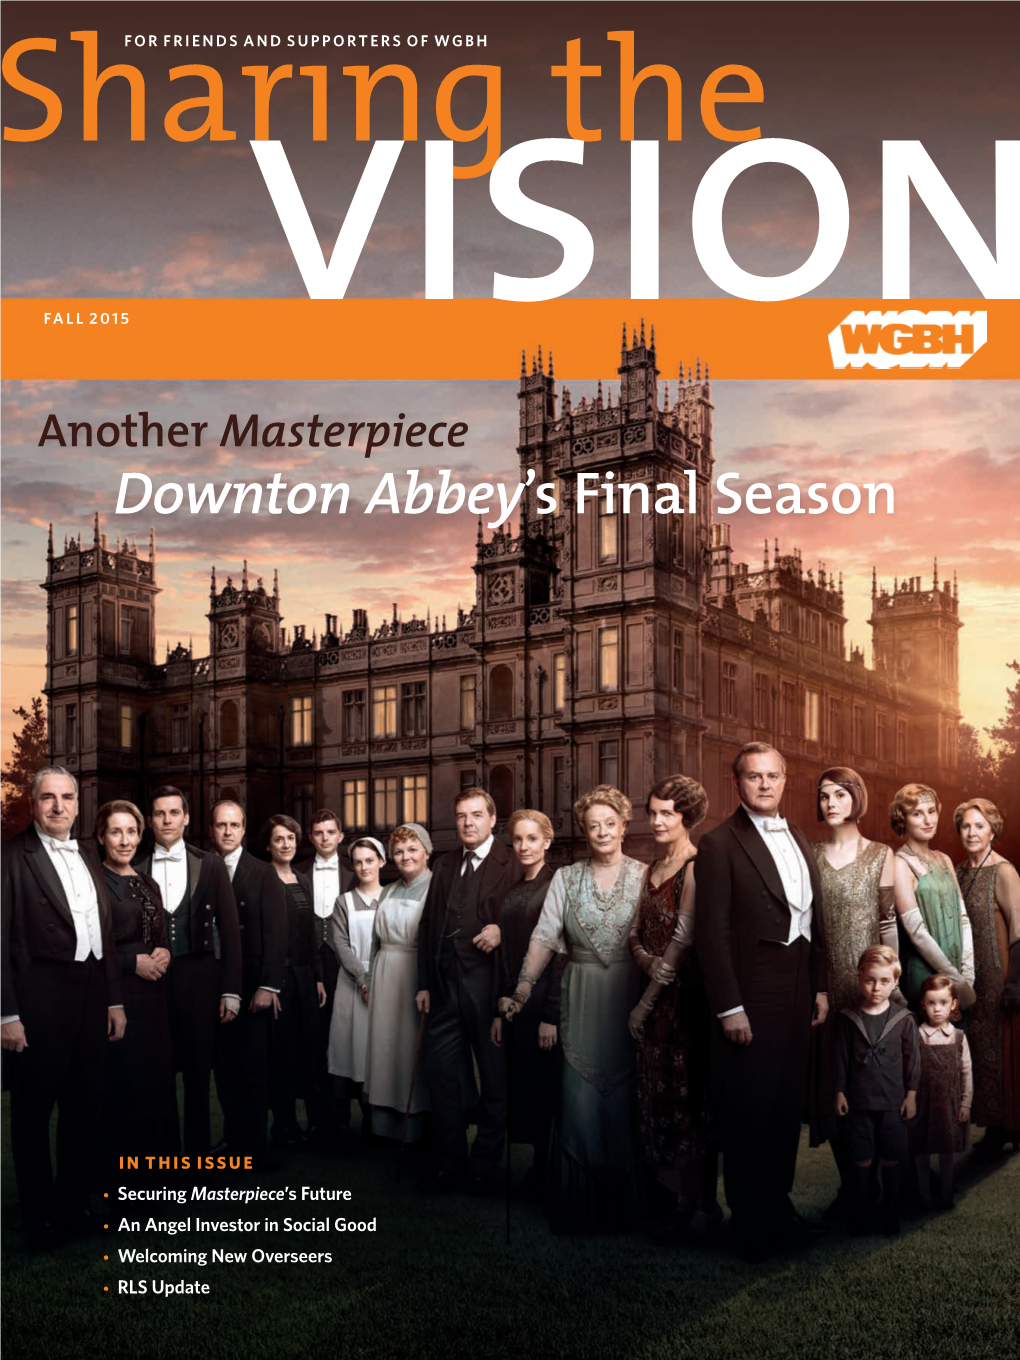 Downton Abbey's Final Season